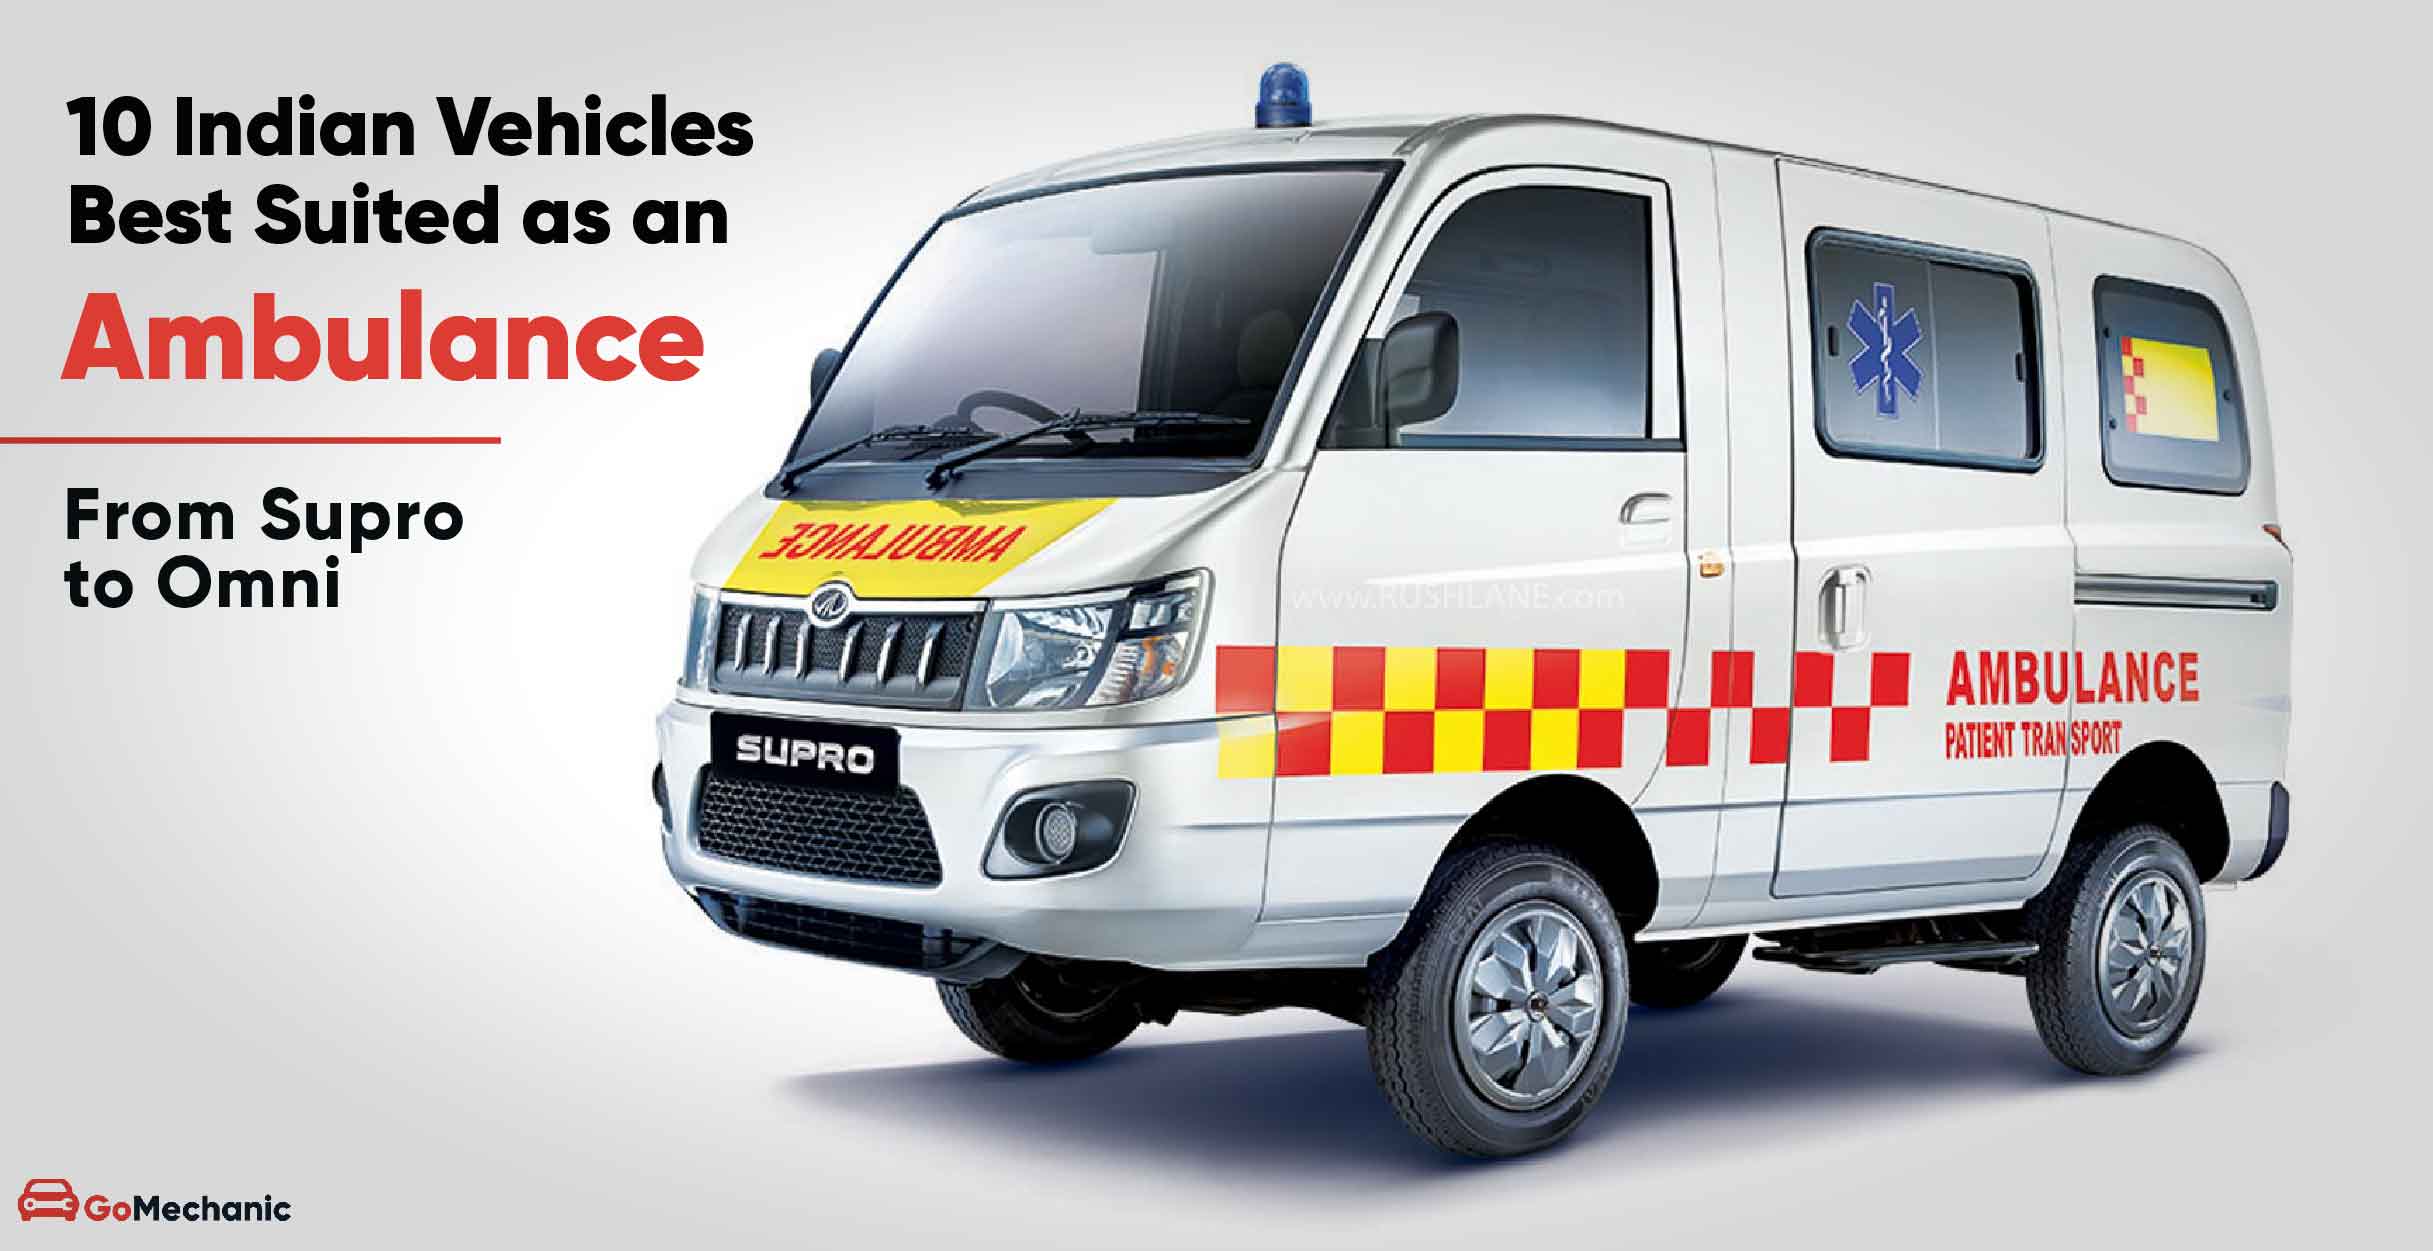 https://blogs.gomechanic.com/wp-content/uploads/2020/07/best-indian-vehicles-as-an-ambulance-01.jpg